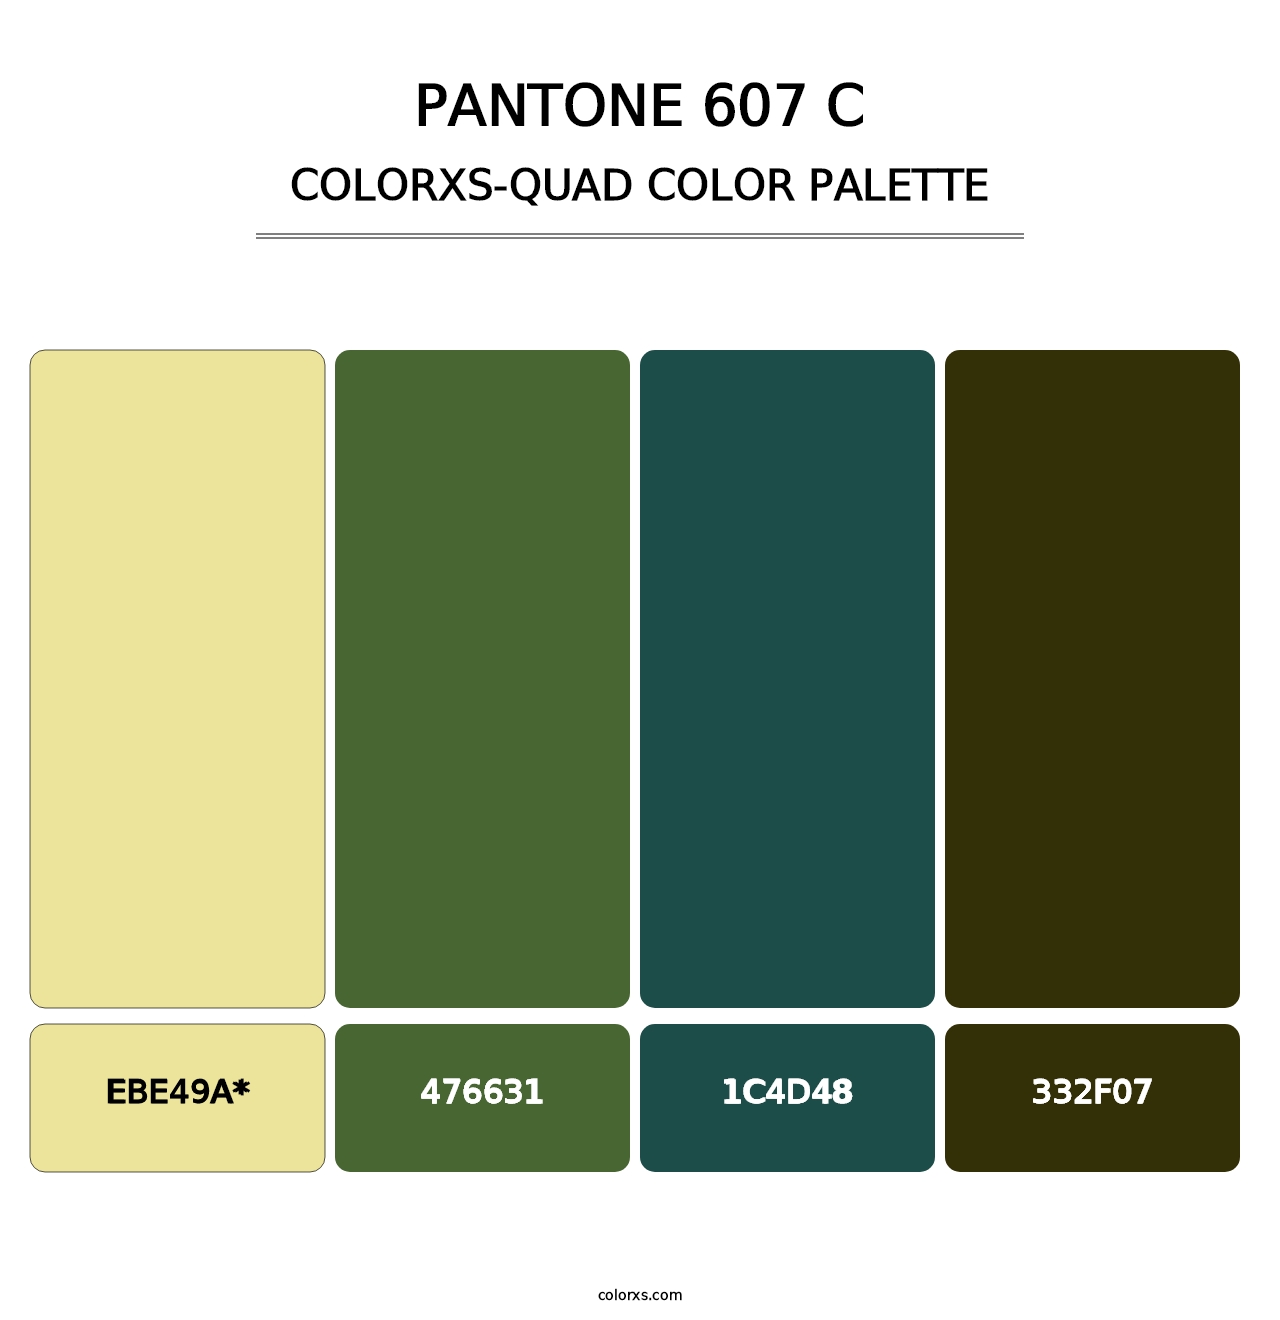 PANTONE 607 C - Colorxs Quad Palette